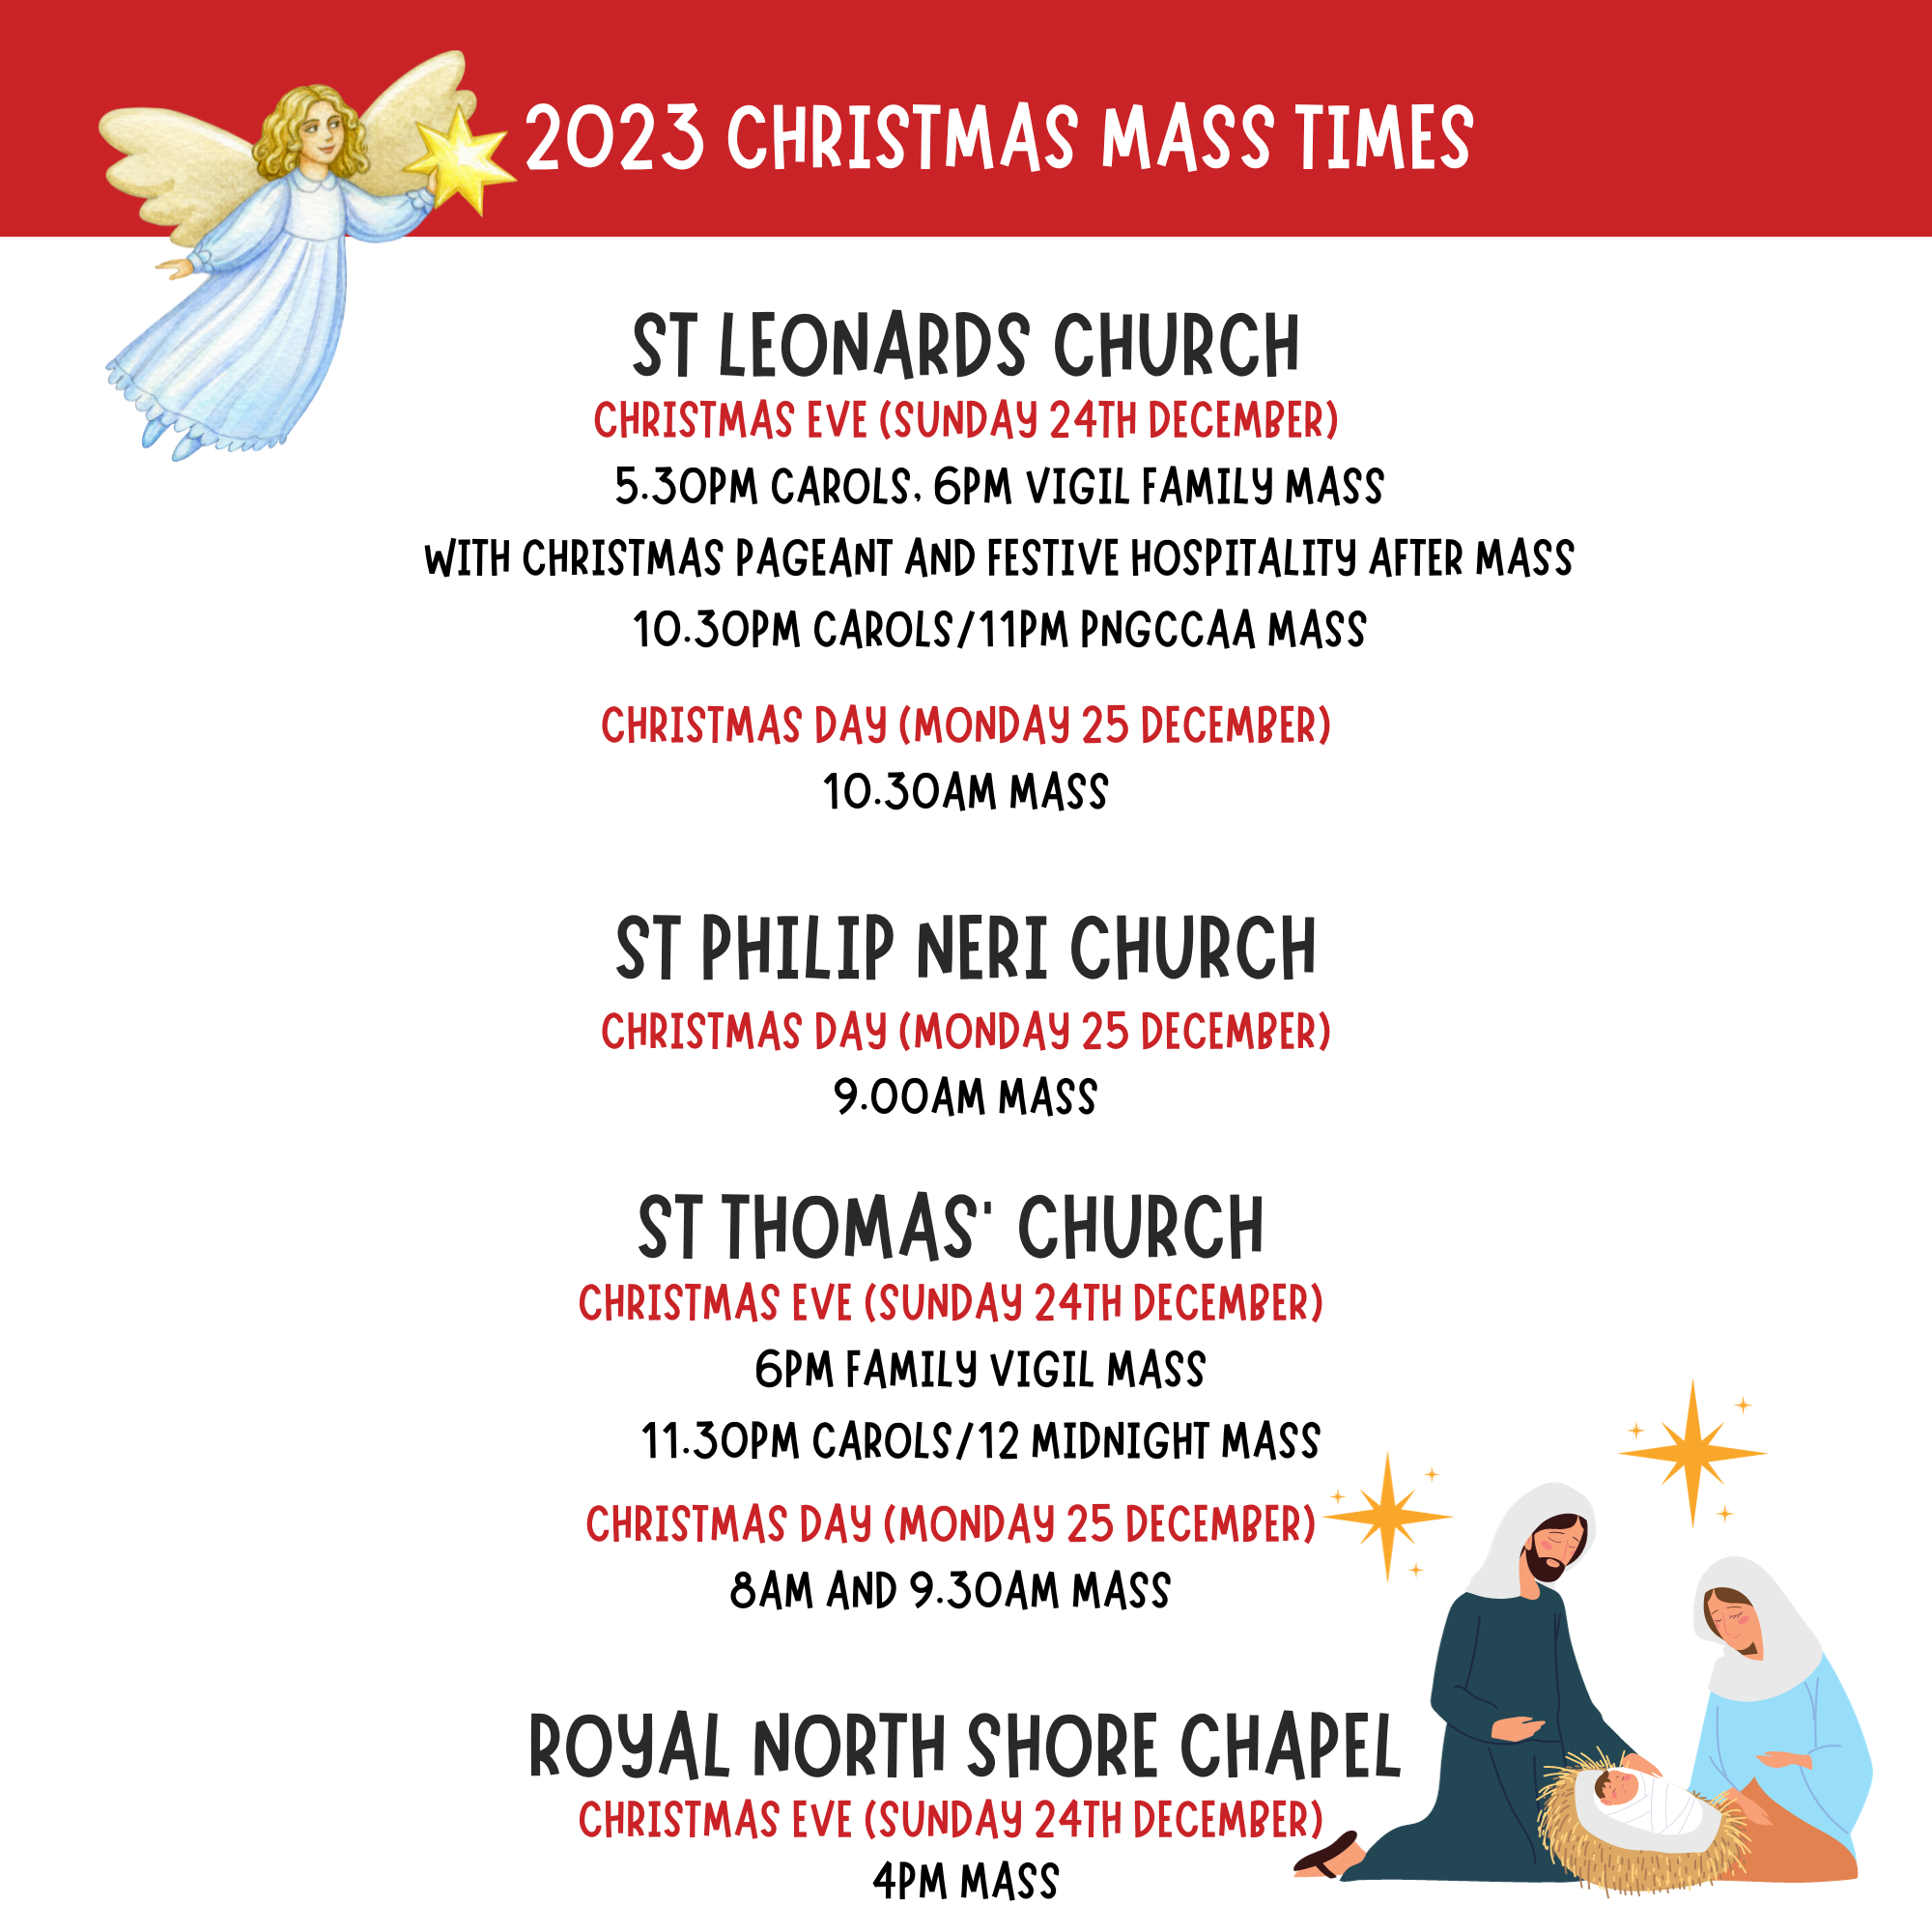 Christmas mass times